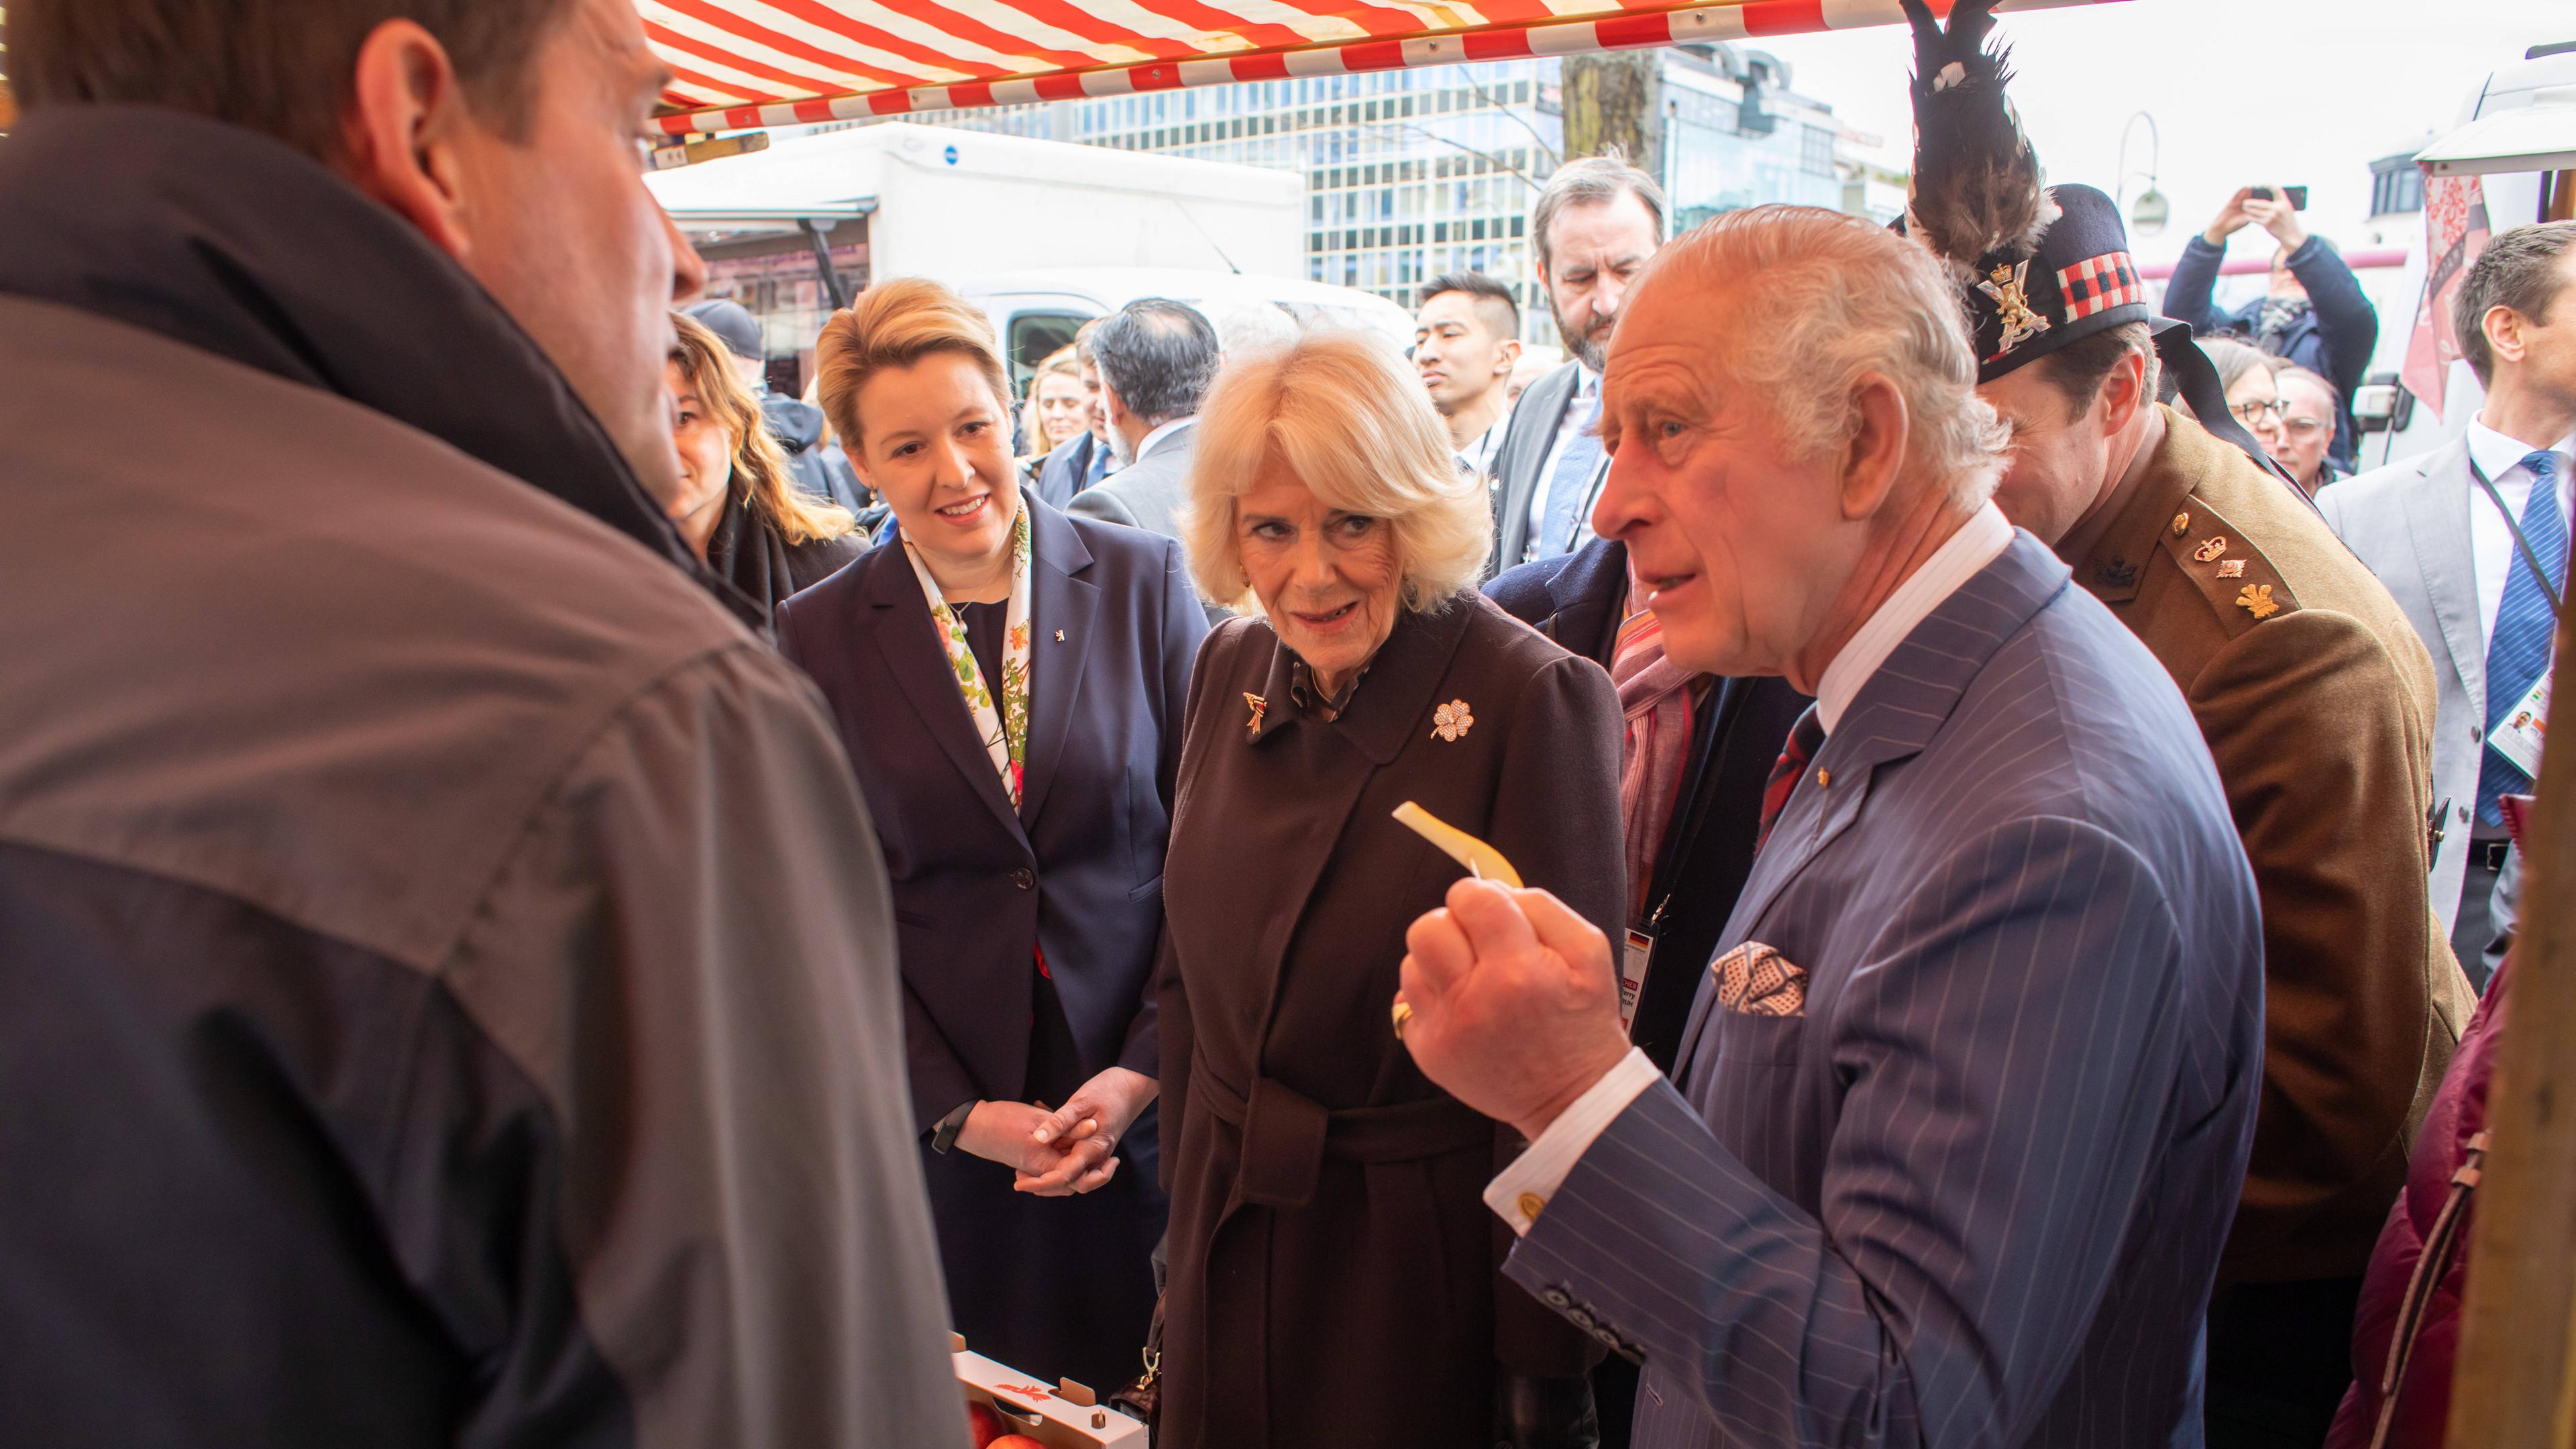 Der britische König Charles III. und Camilla, Queen Consort, LG, GCVO besuchten am Donnerstag Vormittag den Wochenmarkt auf dem Wittenbergplatz und unterhielten sich mit den einzelnen Händlern an den Ständen. Begleitet wurden sie von der regierenden Bürgermeisterin Franziska Giffey.